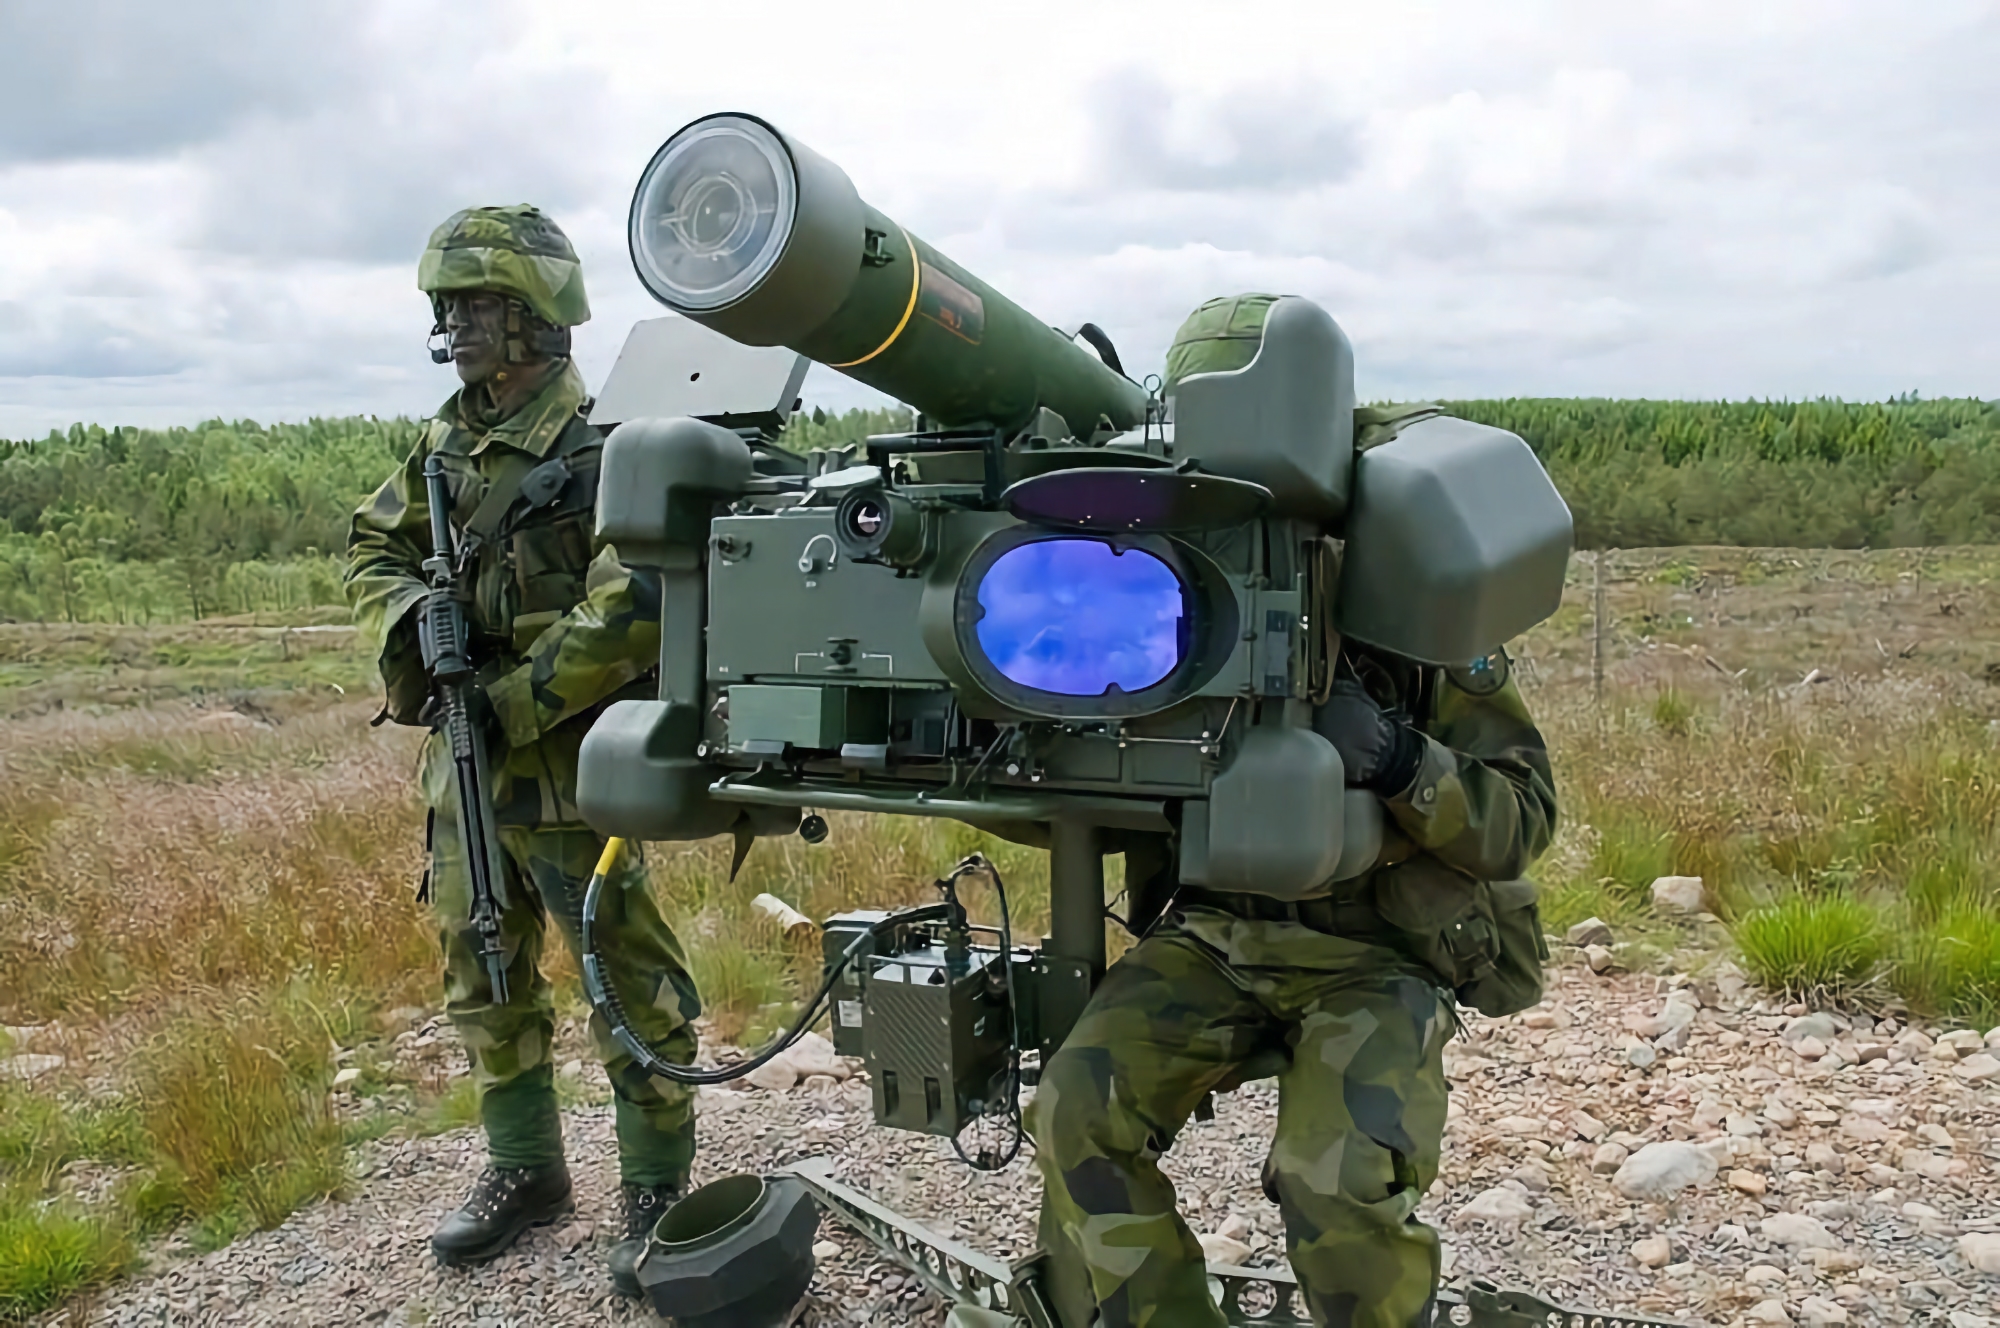 Lettland bestellte das Saab-Luftverteidigungssystem RBS 70 NG mit einer Zielreichweite von 8 km und Giraffe 1X-Radar